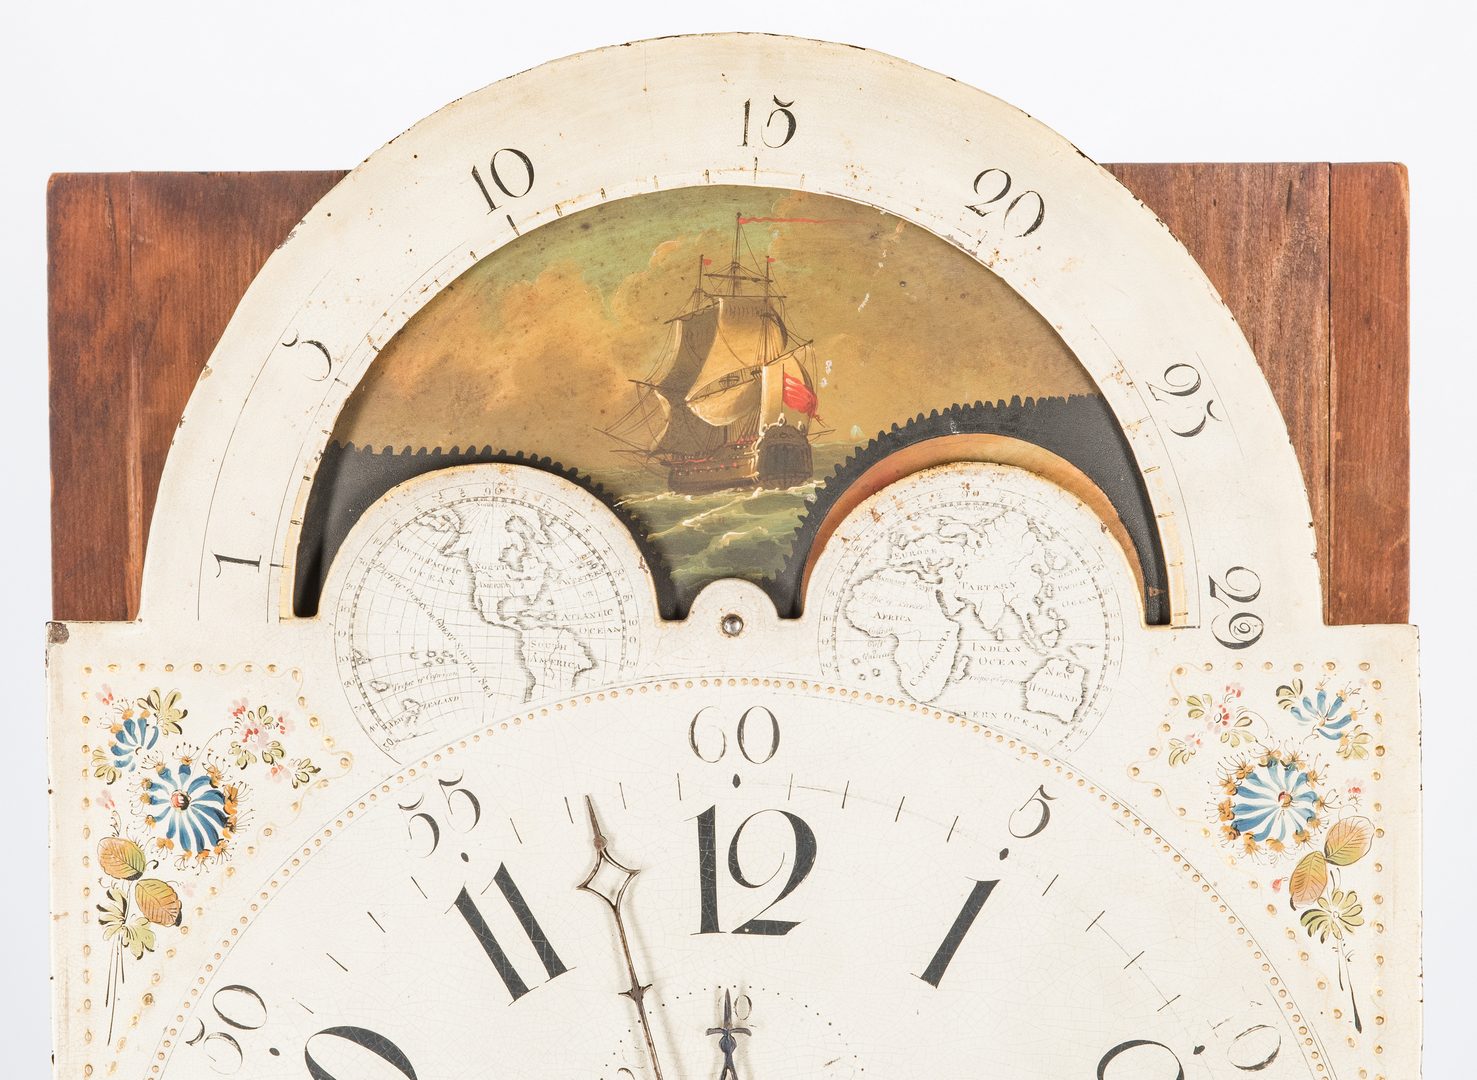 Lot 140: Soloman Parke Federal Inlaid Tall Clock